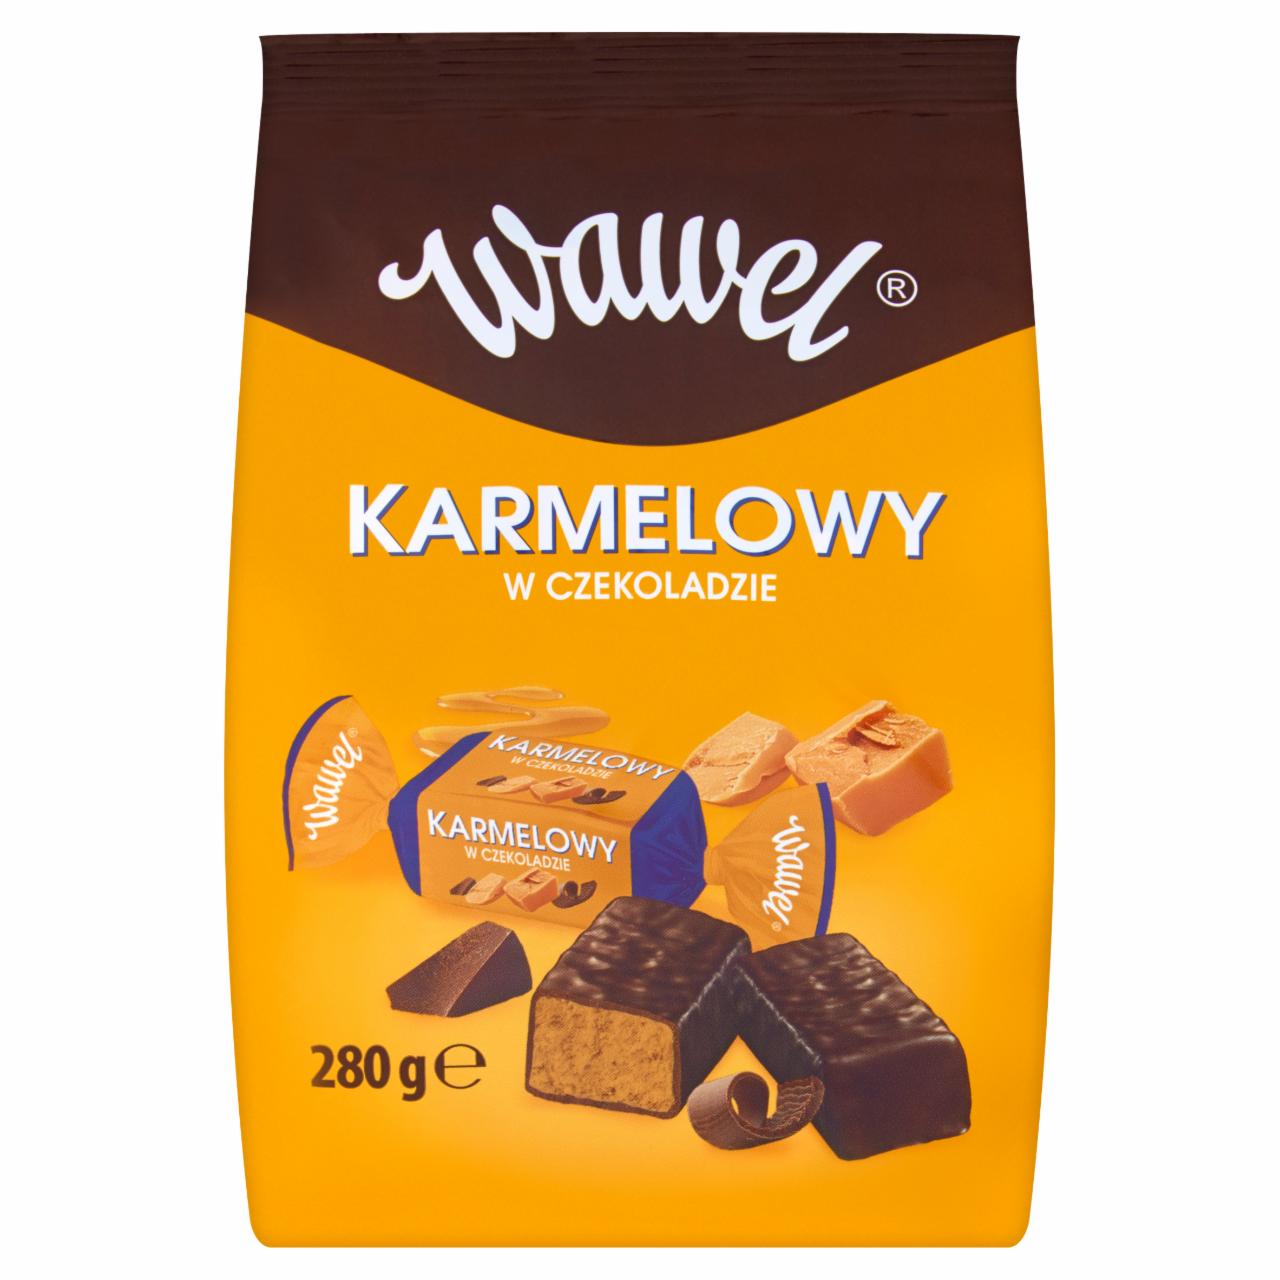 Zdjęcia - Wawel Karmelowy Cukierki z czekoladą mleczną i alkoholem 280 g